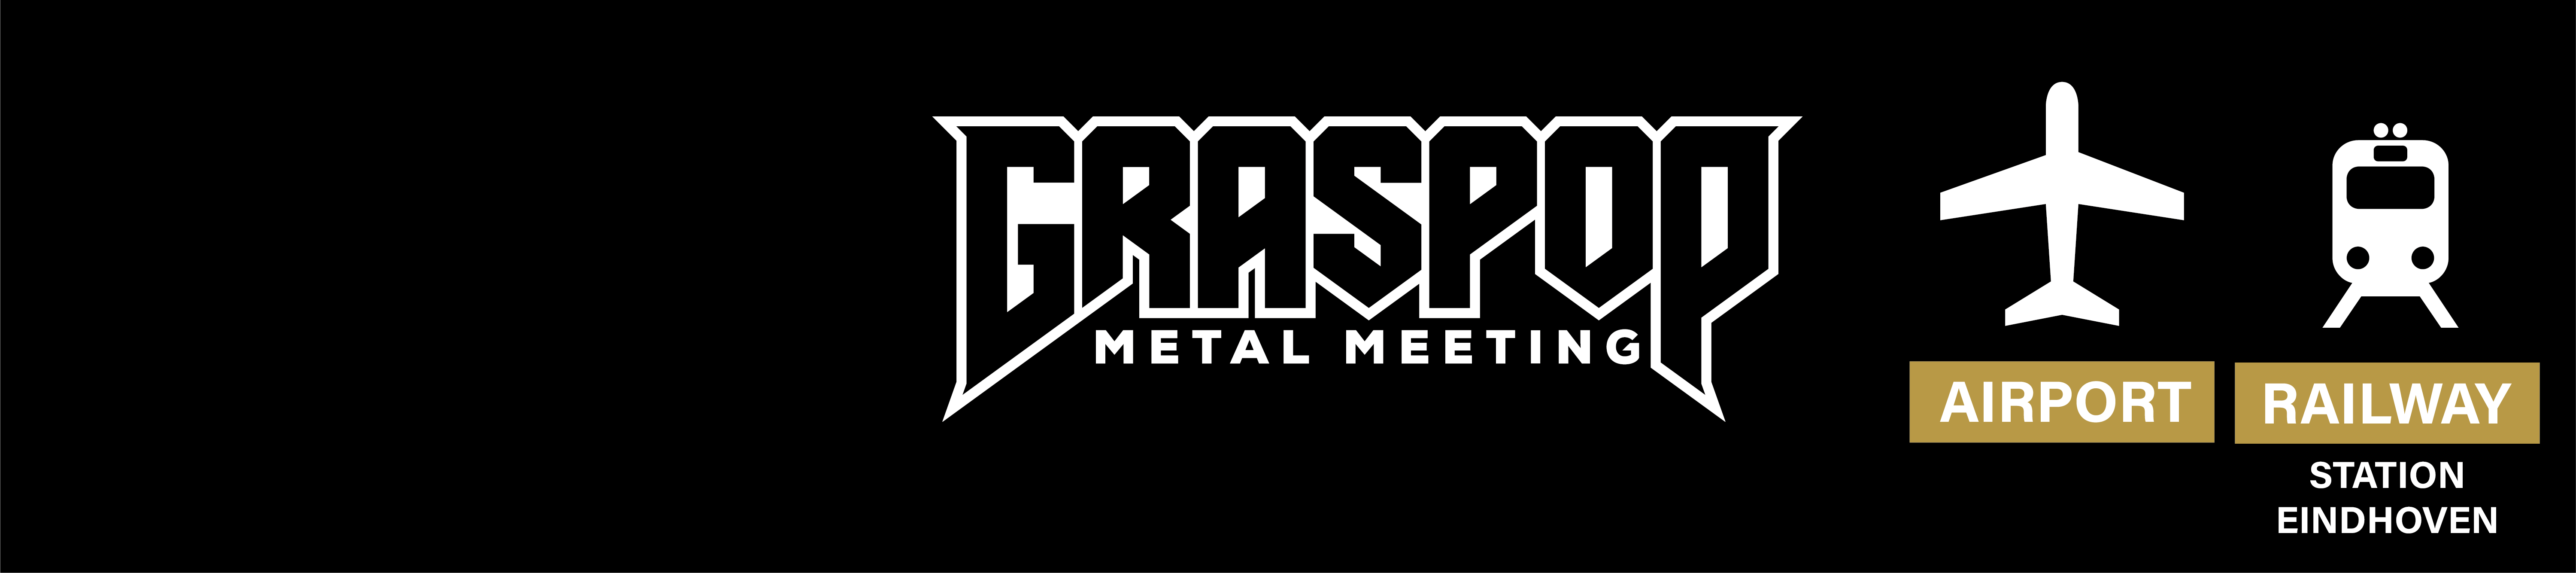 Graspop Metal Meeting  - Airport & Railway Shuttles